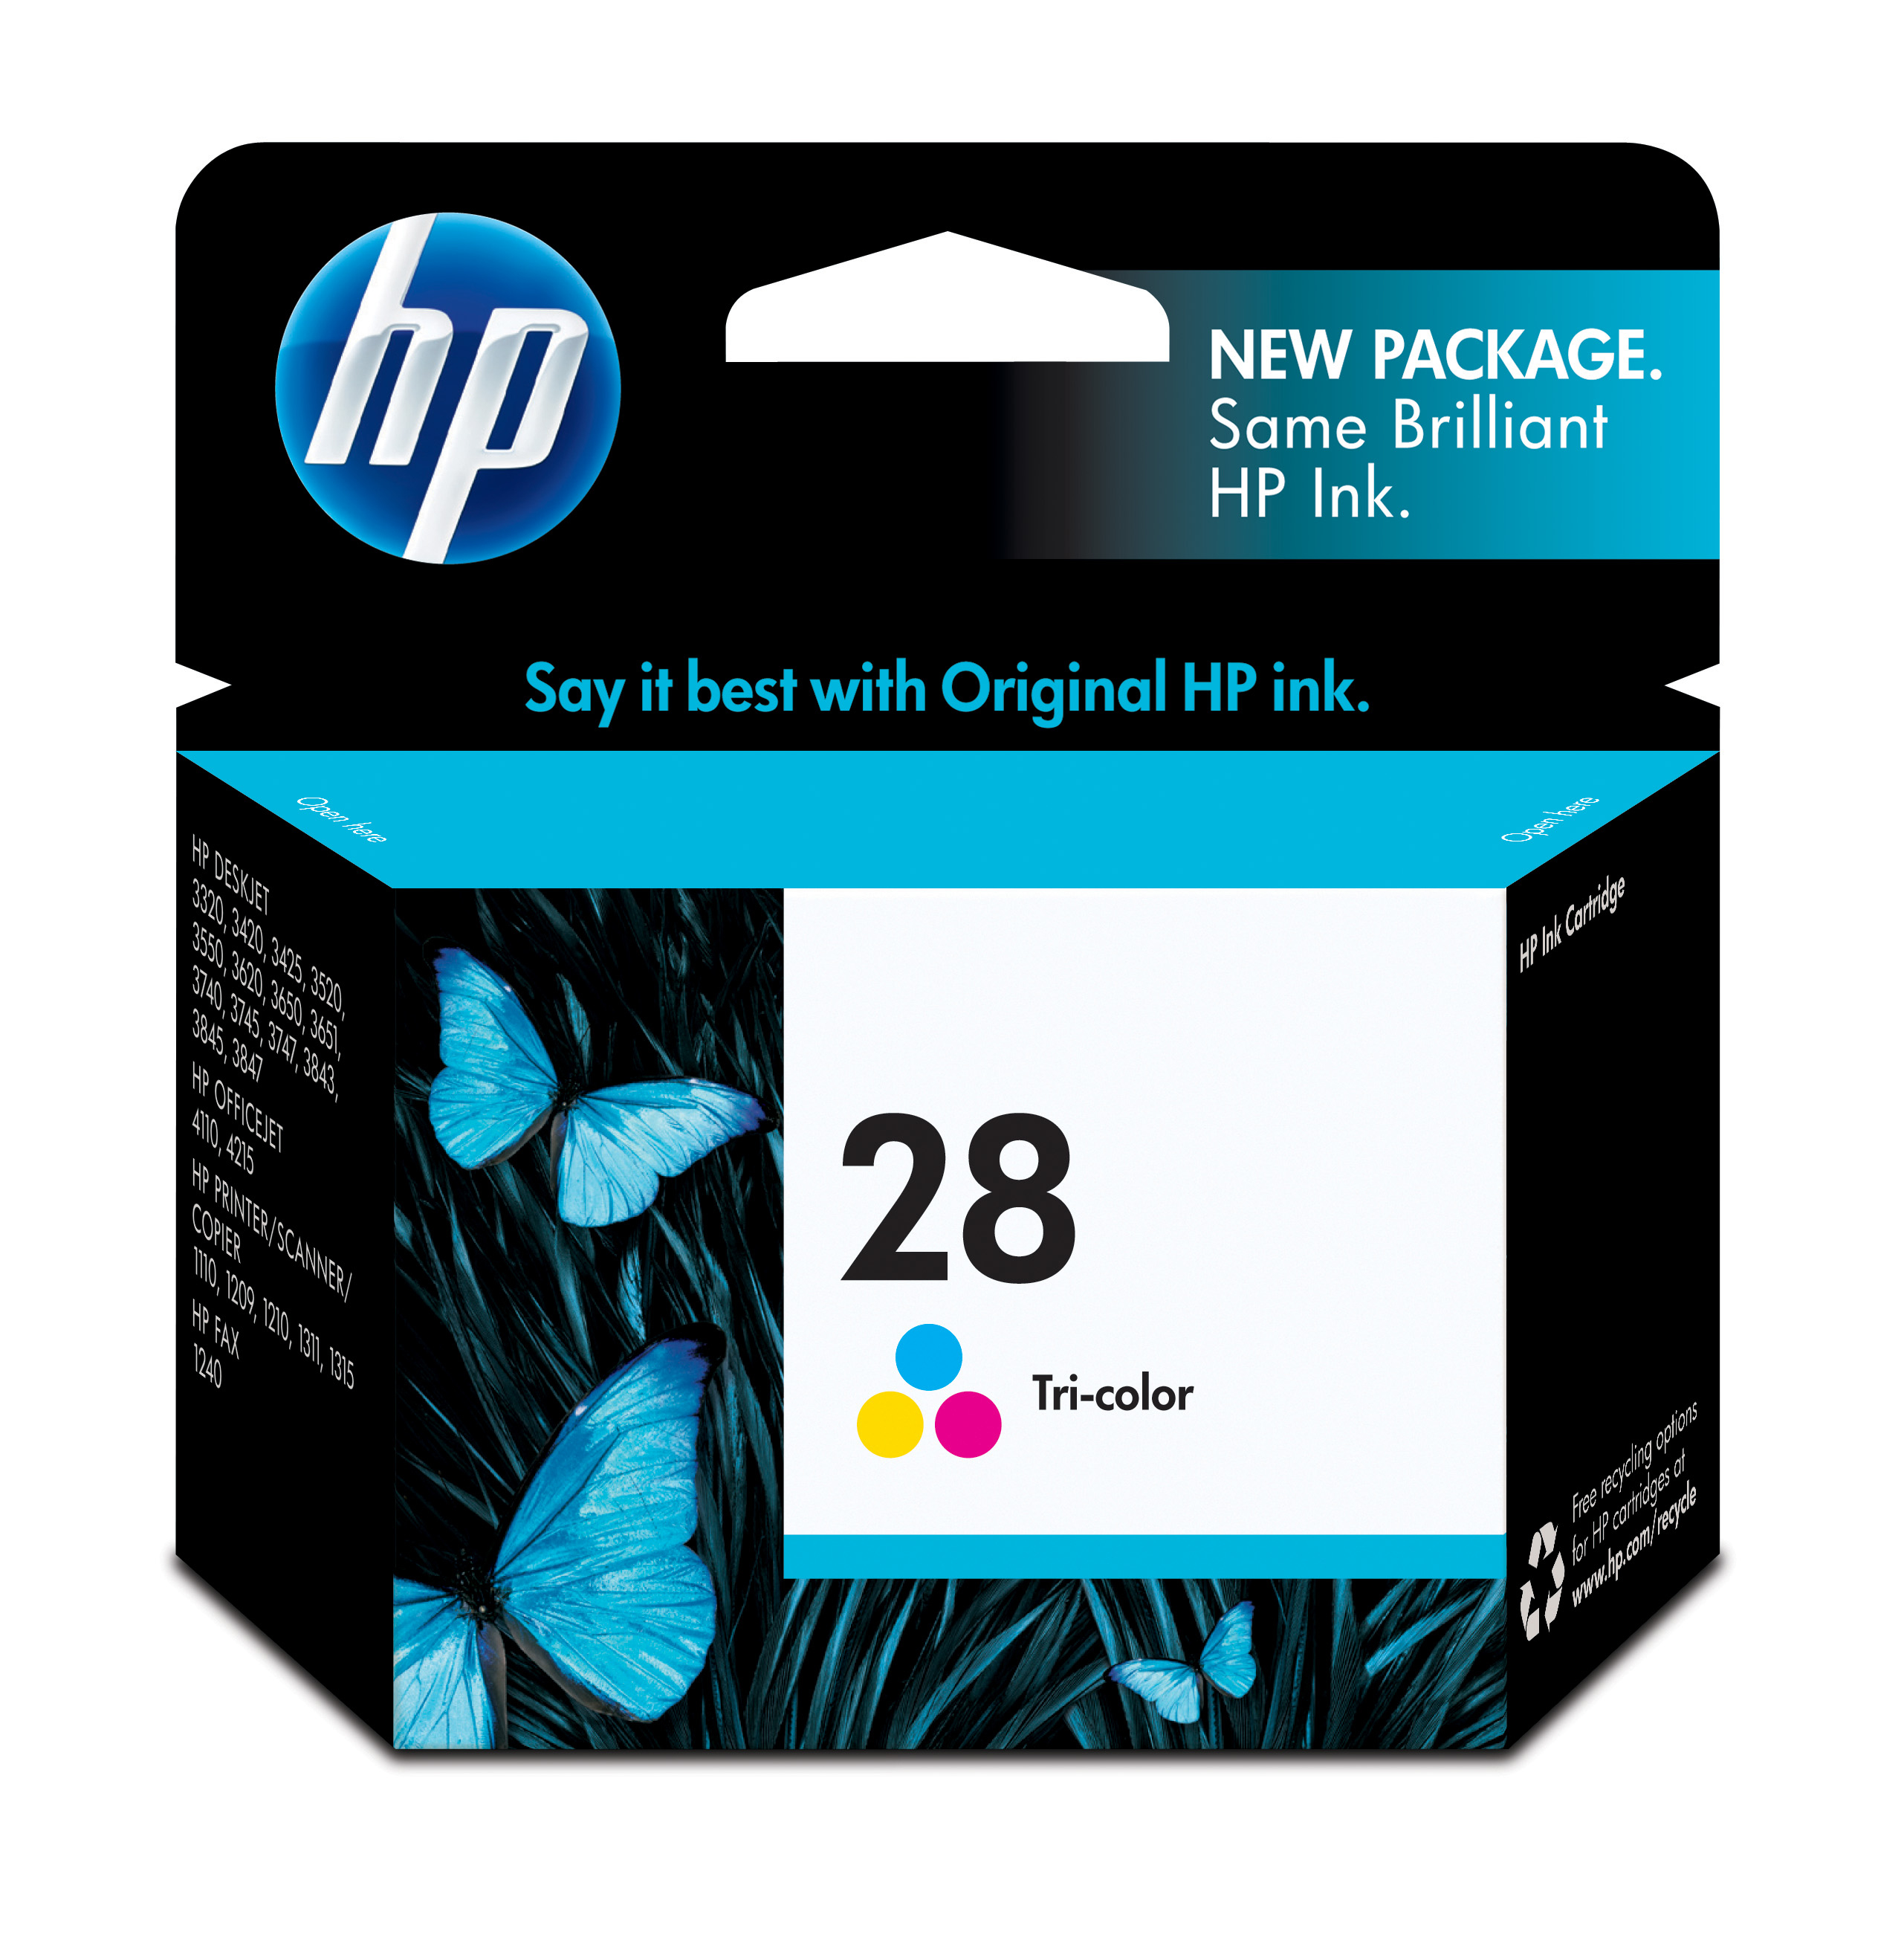 HP 28 Tri-color Inkjet Print Cartridge Genuine HP Inkjet